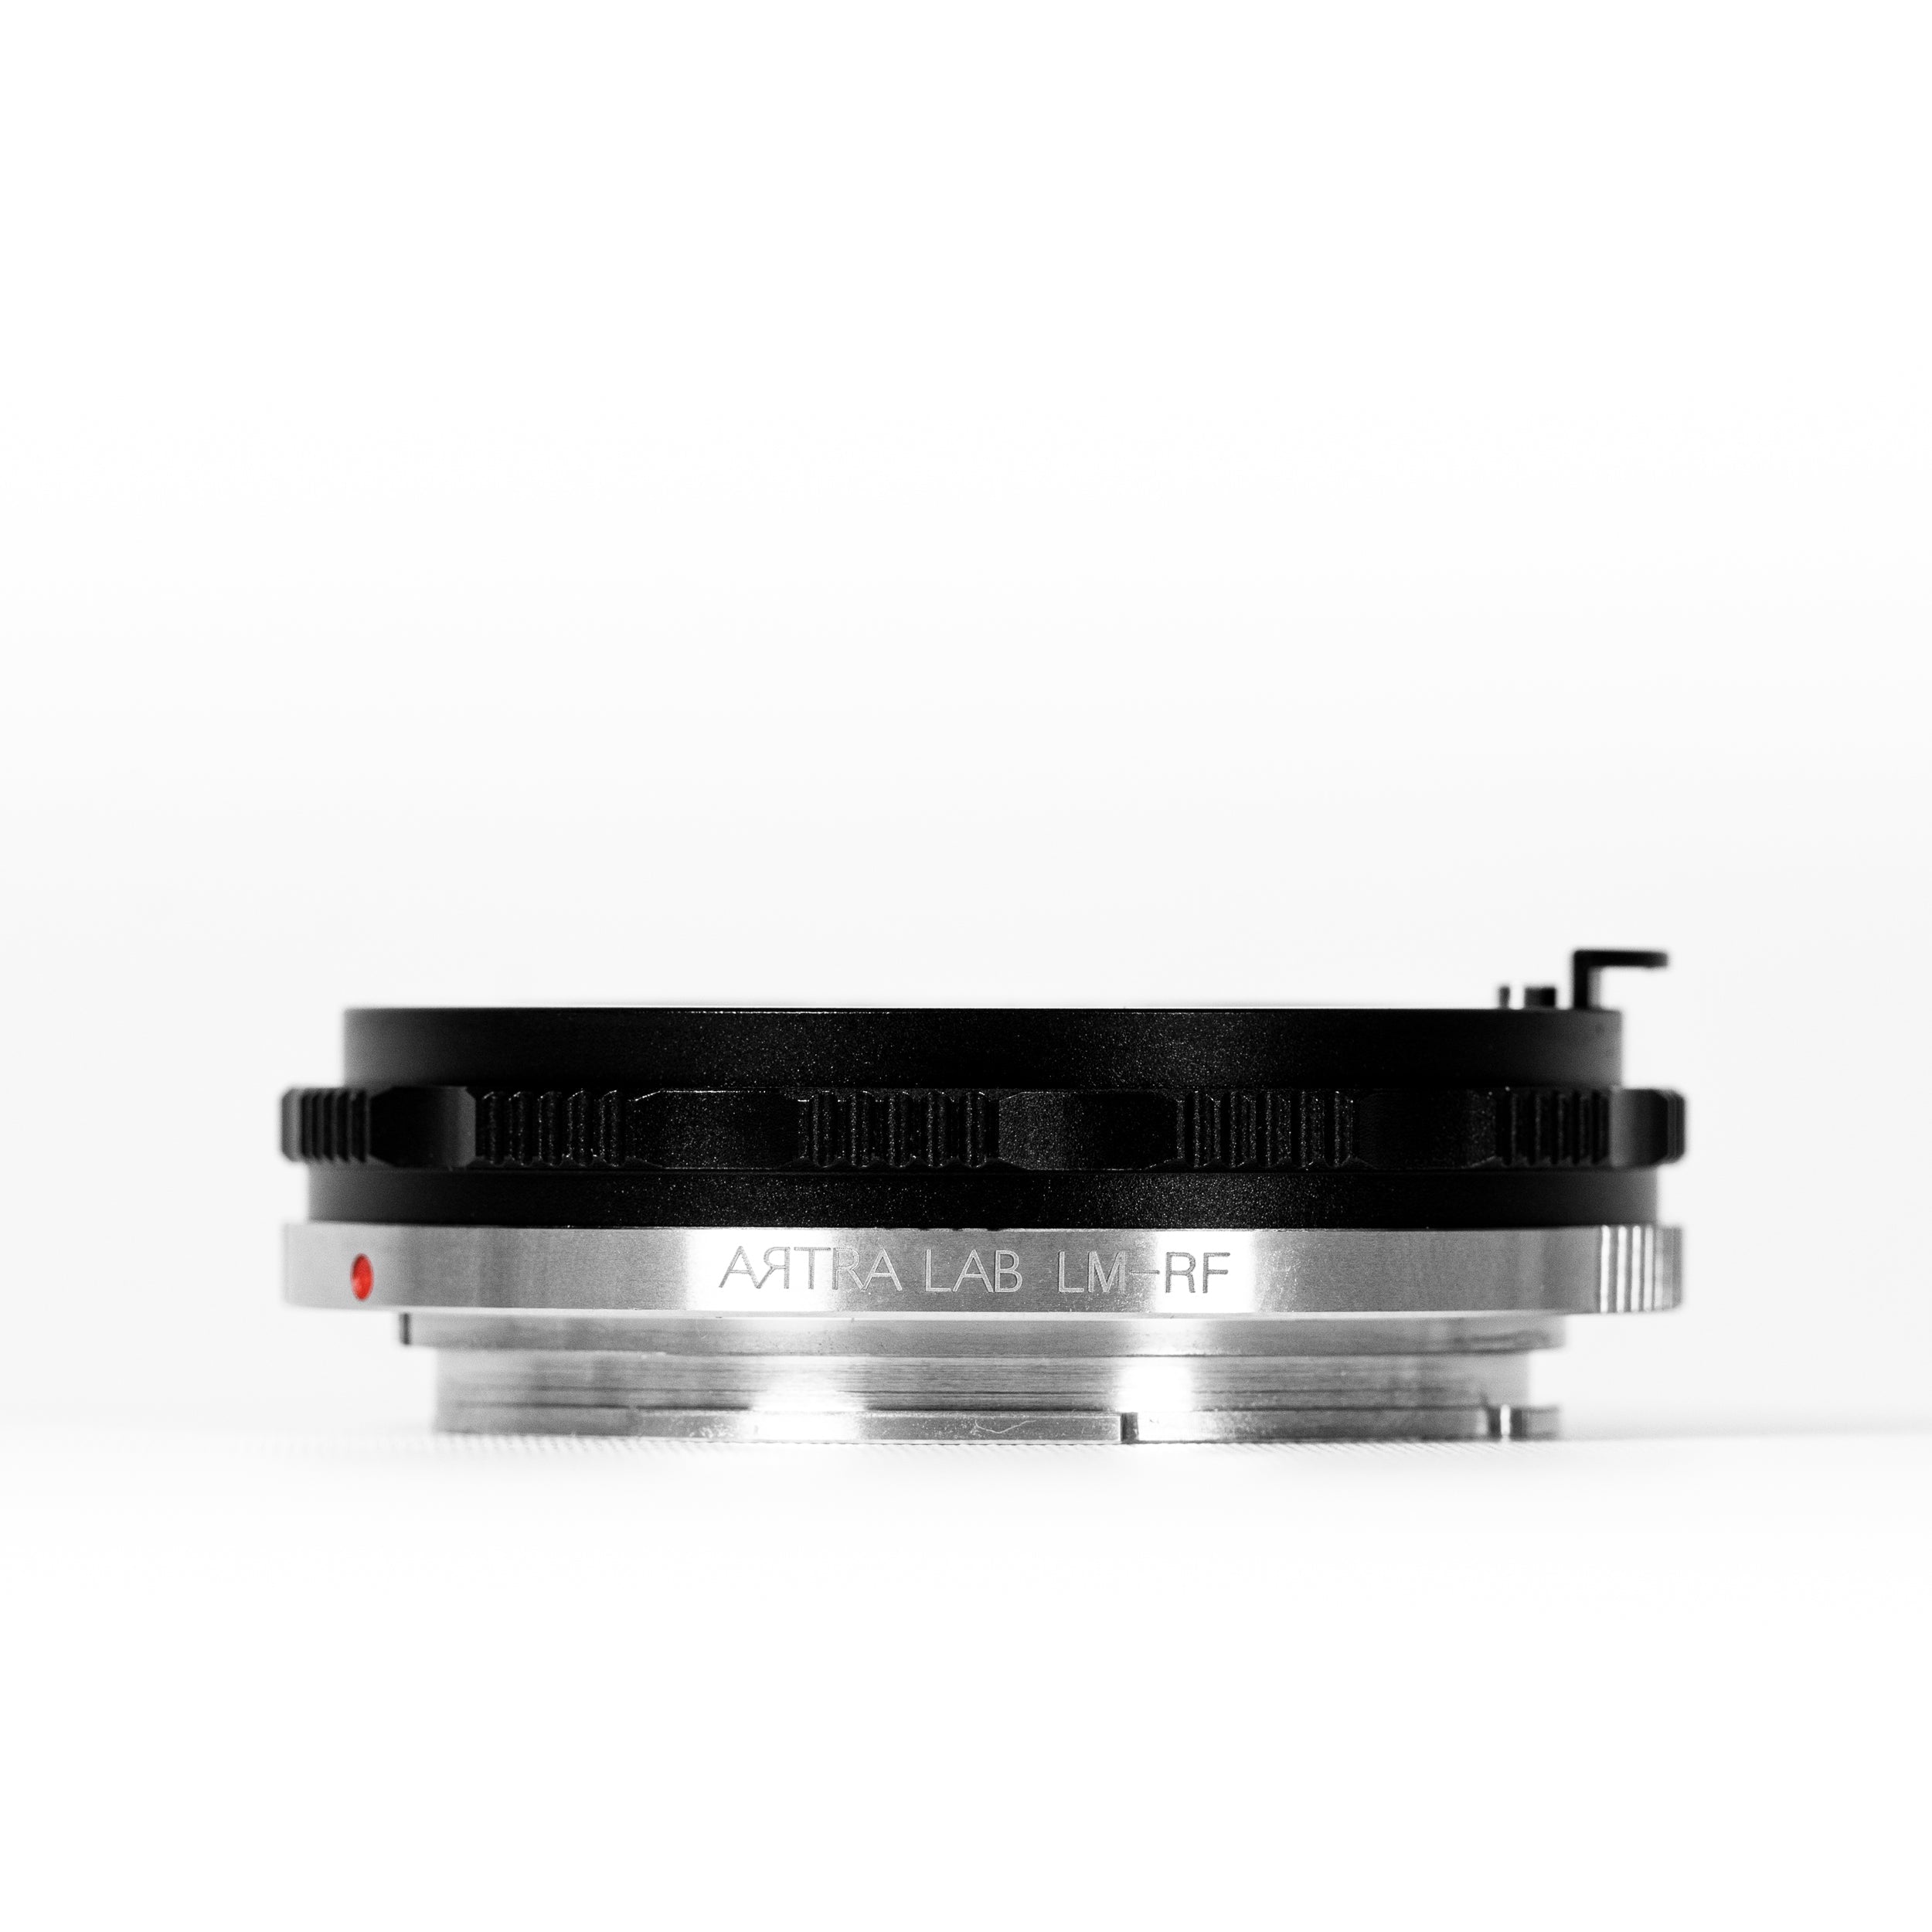 ARTRA LAB Leica M Mount Lenses to Canon EOS RF Mount Body Macro Adaptor / Close Focus Adaptor